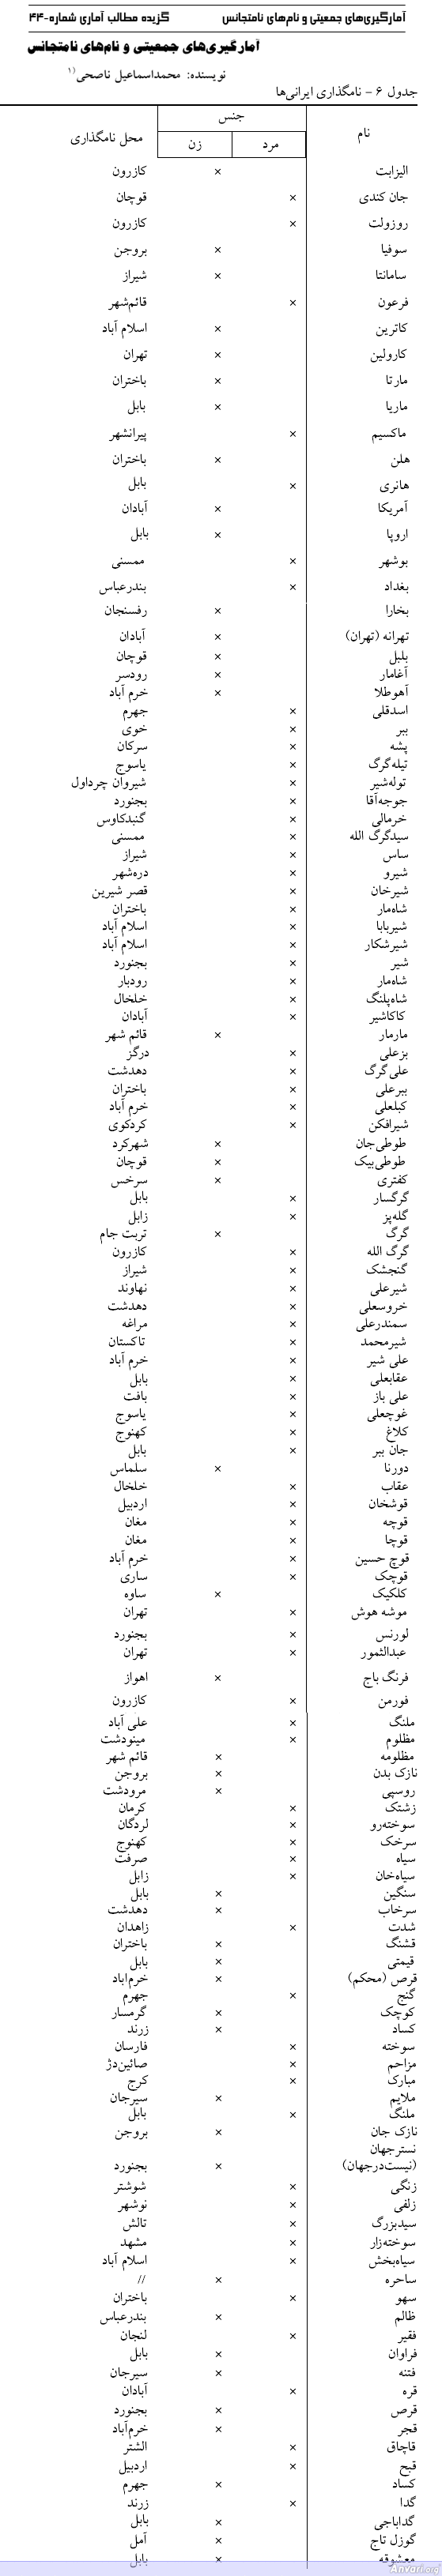 Weirdest Persian Names - Weirdest Persian Names 